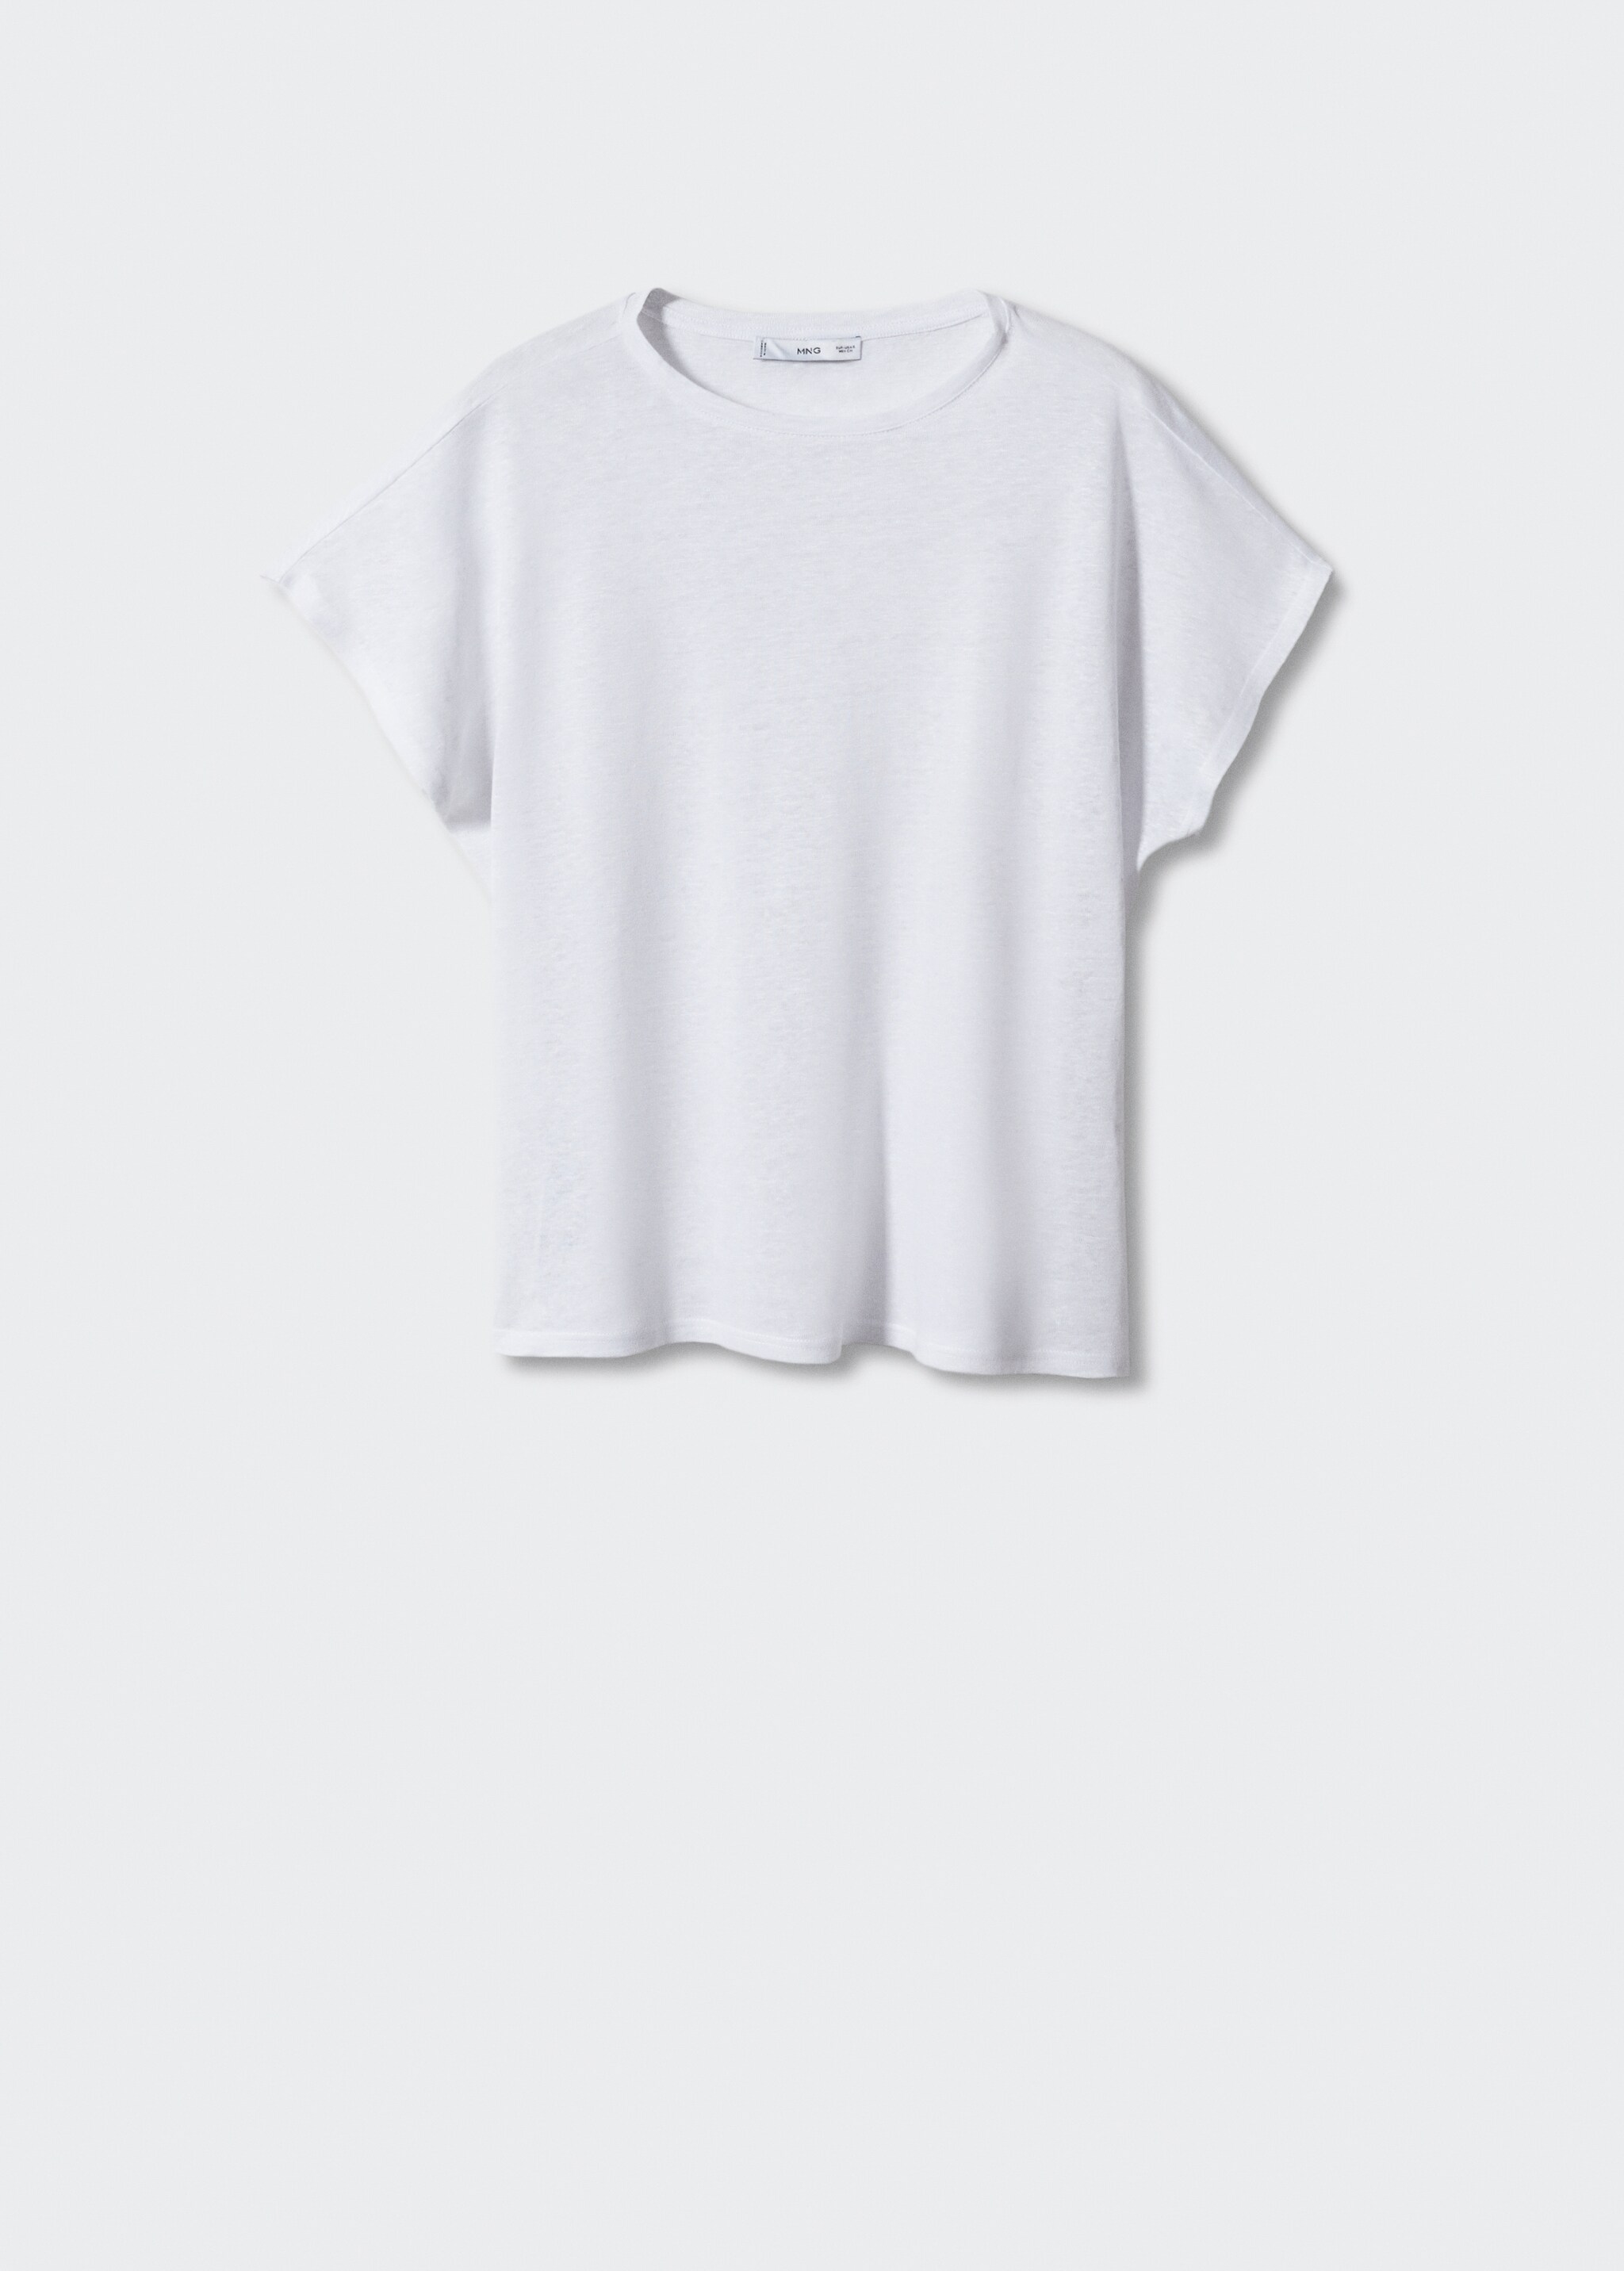 Camiseta 100% lino - Artículo sin modelo